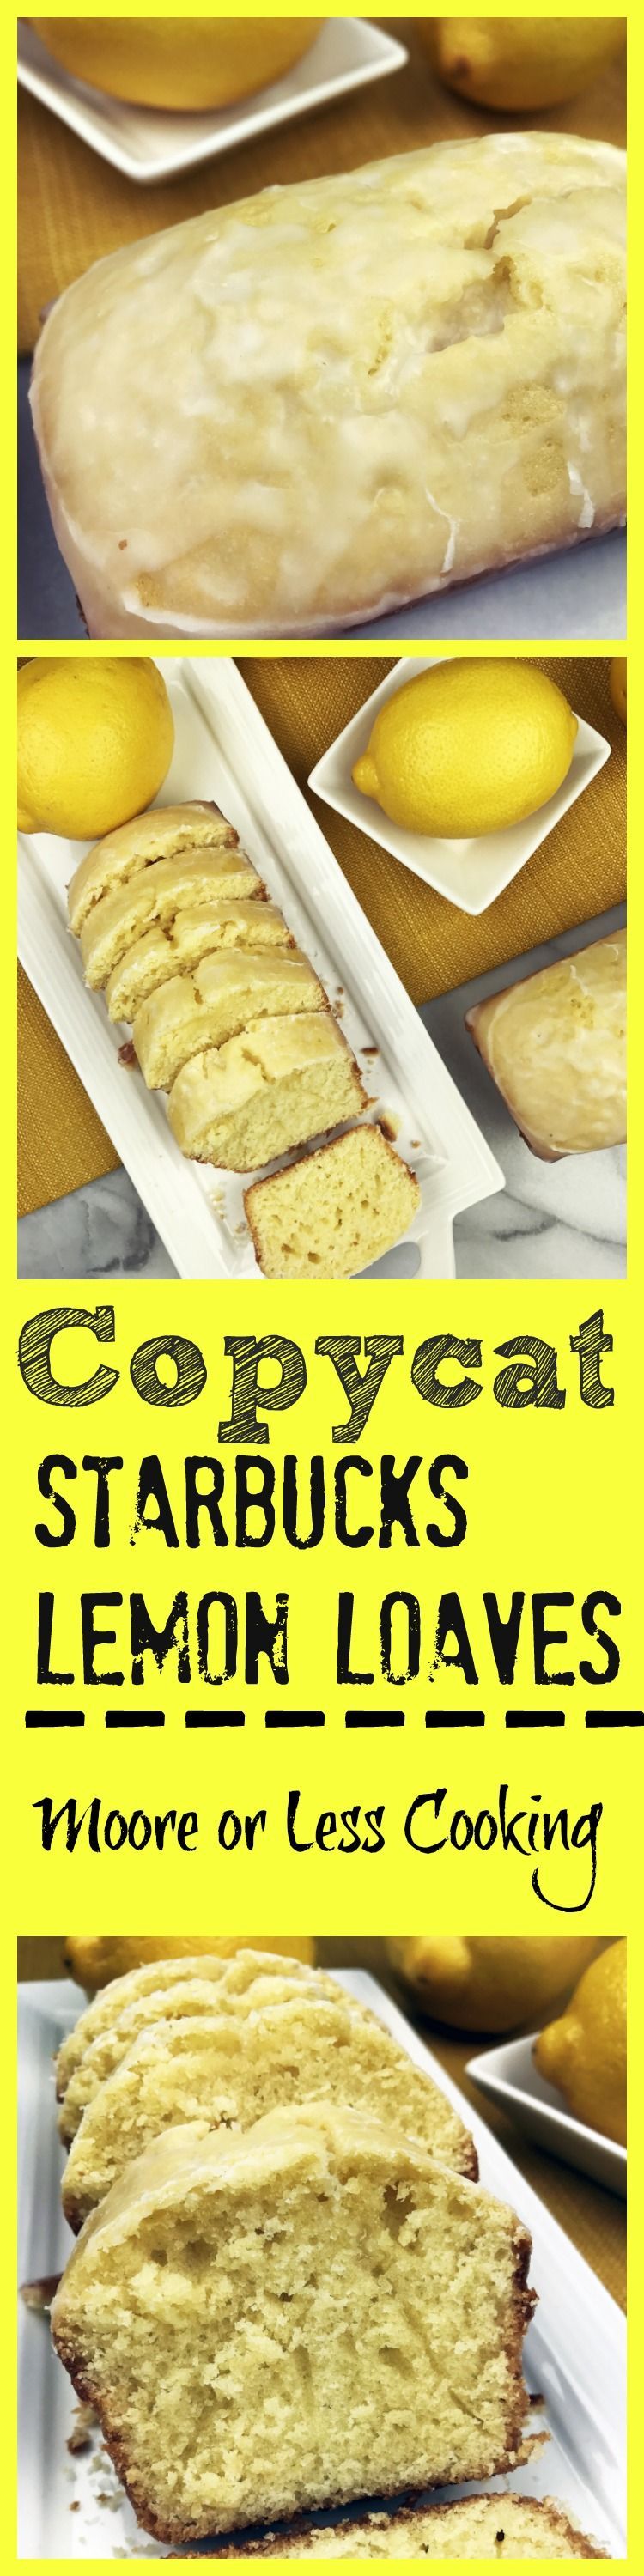 The Best Copycat Starbucks Lemon Loaves!! I think this is even better than the Starbucks lemon loaf! So moist and full of lemon